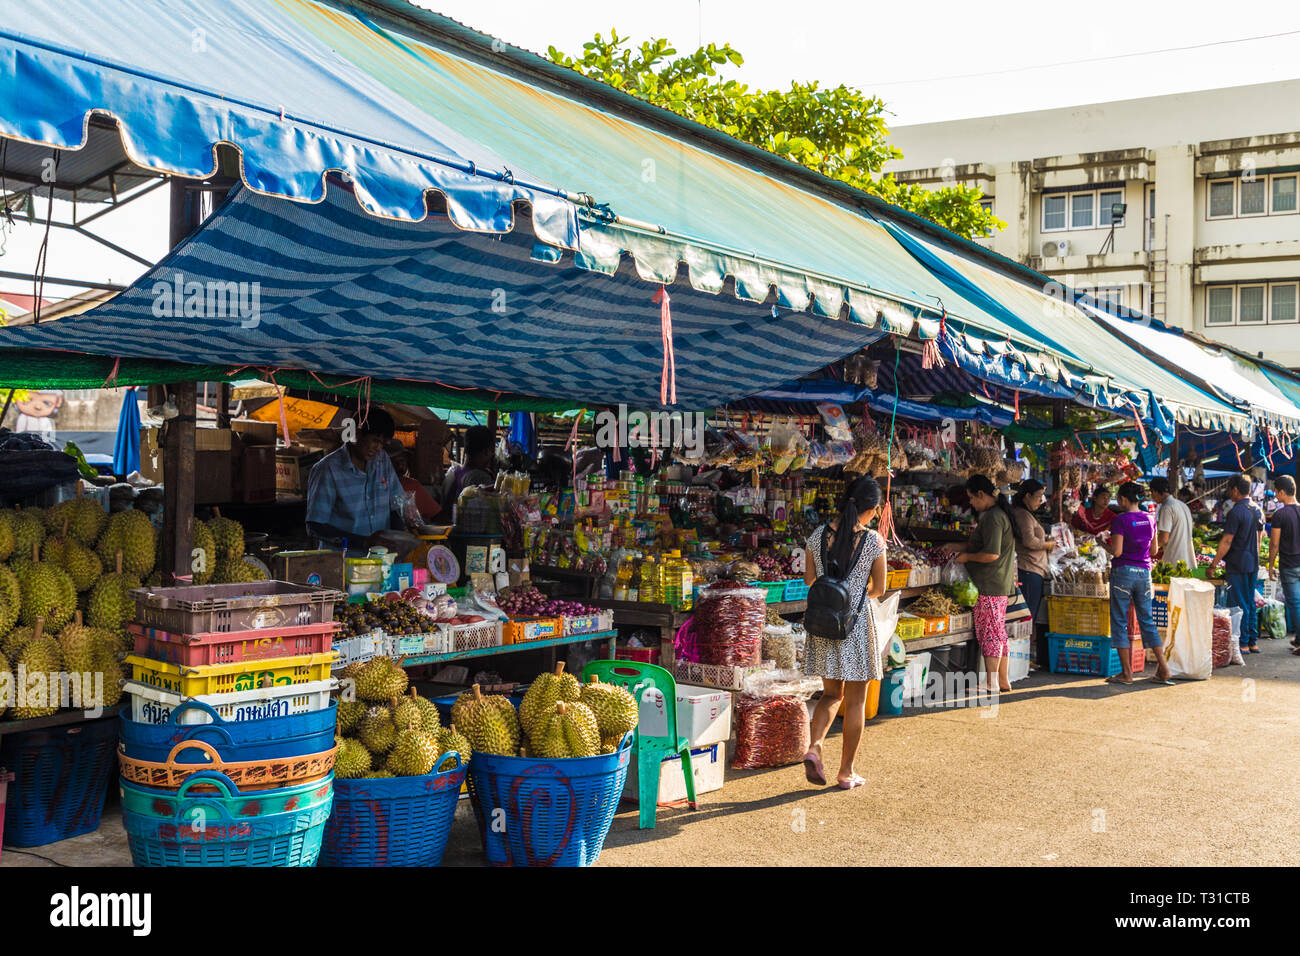 Février 2019. La ville de Phuket en Thaïlande. Une scène de marché au marché local de fruits de 24 heures dans la vieille ville de Phuket Banque D'Images